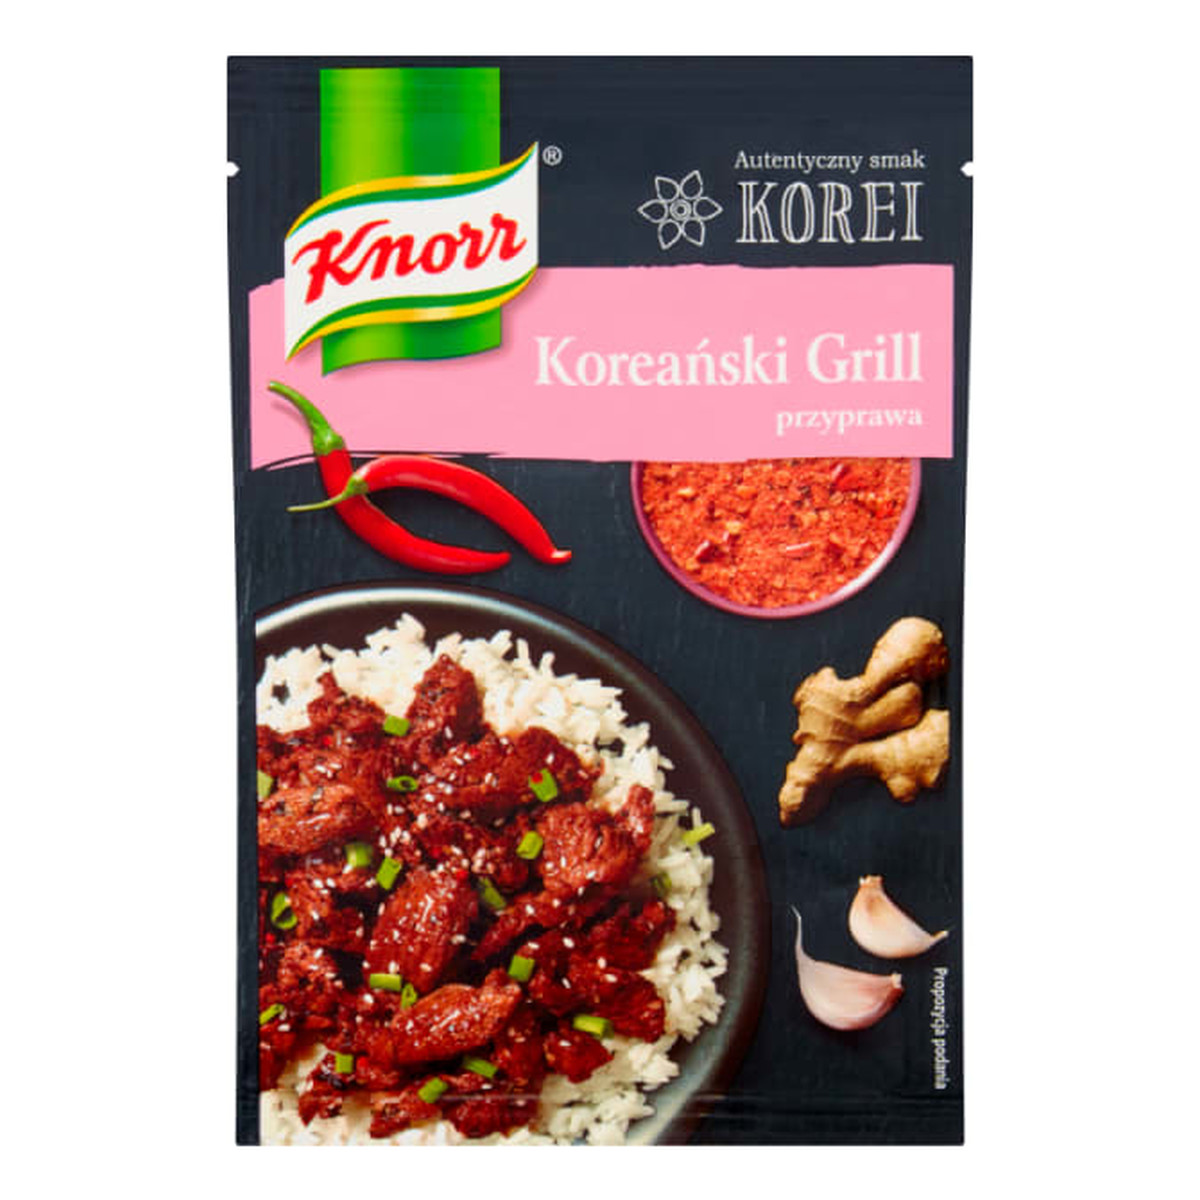 Knorr Autentyczny Smak Korei przyprawa Koreański Grill 15g